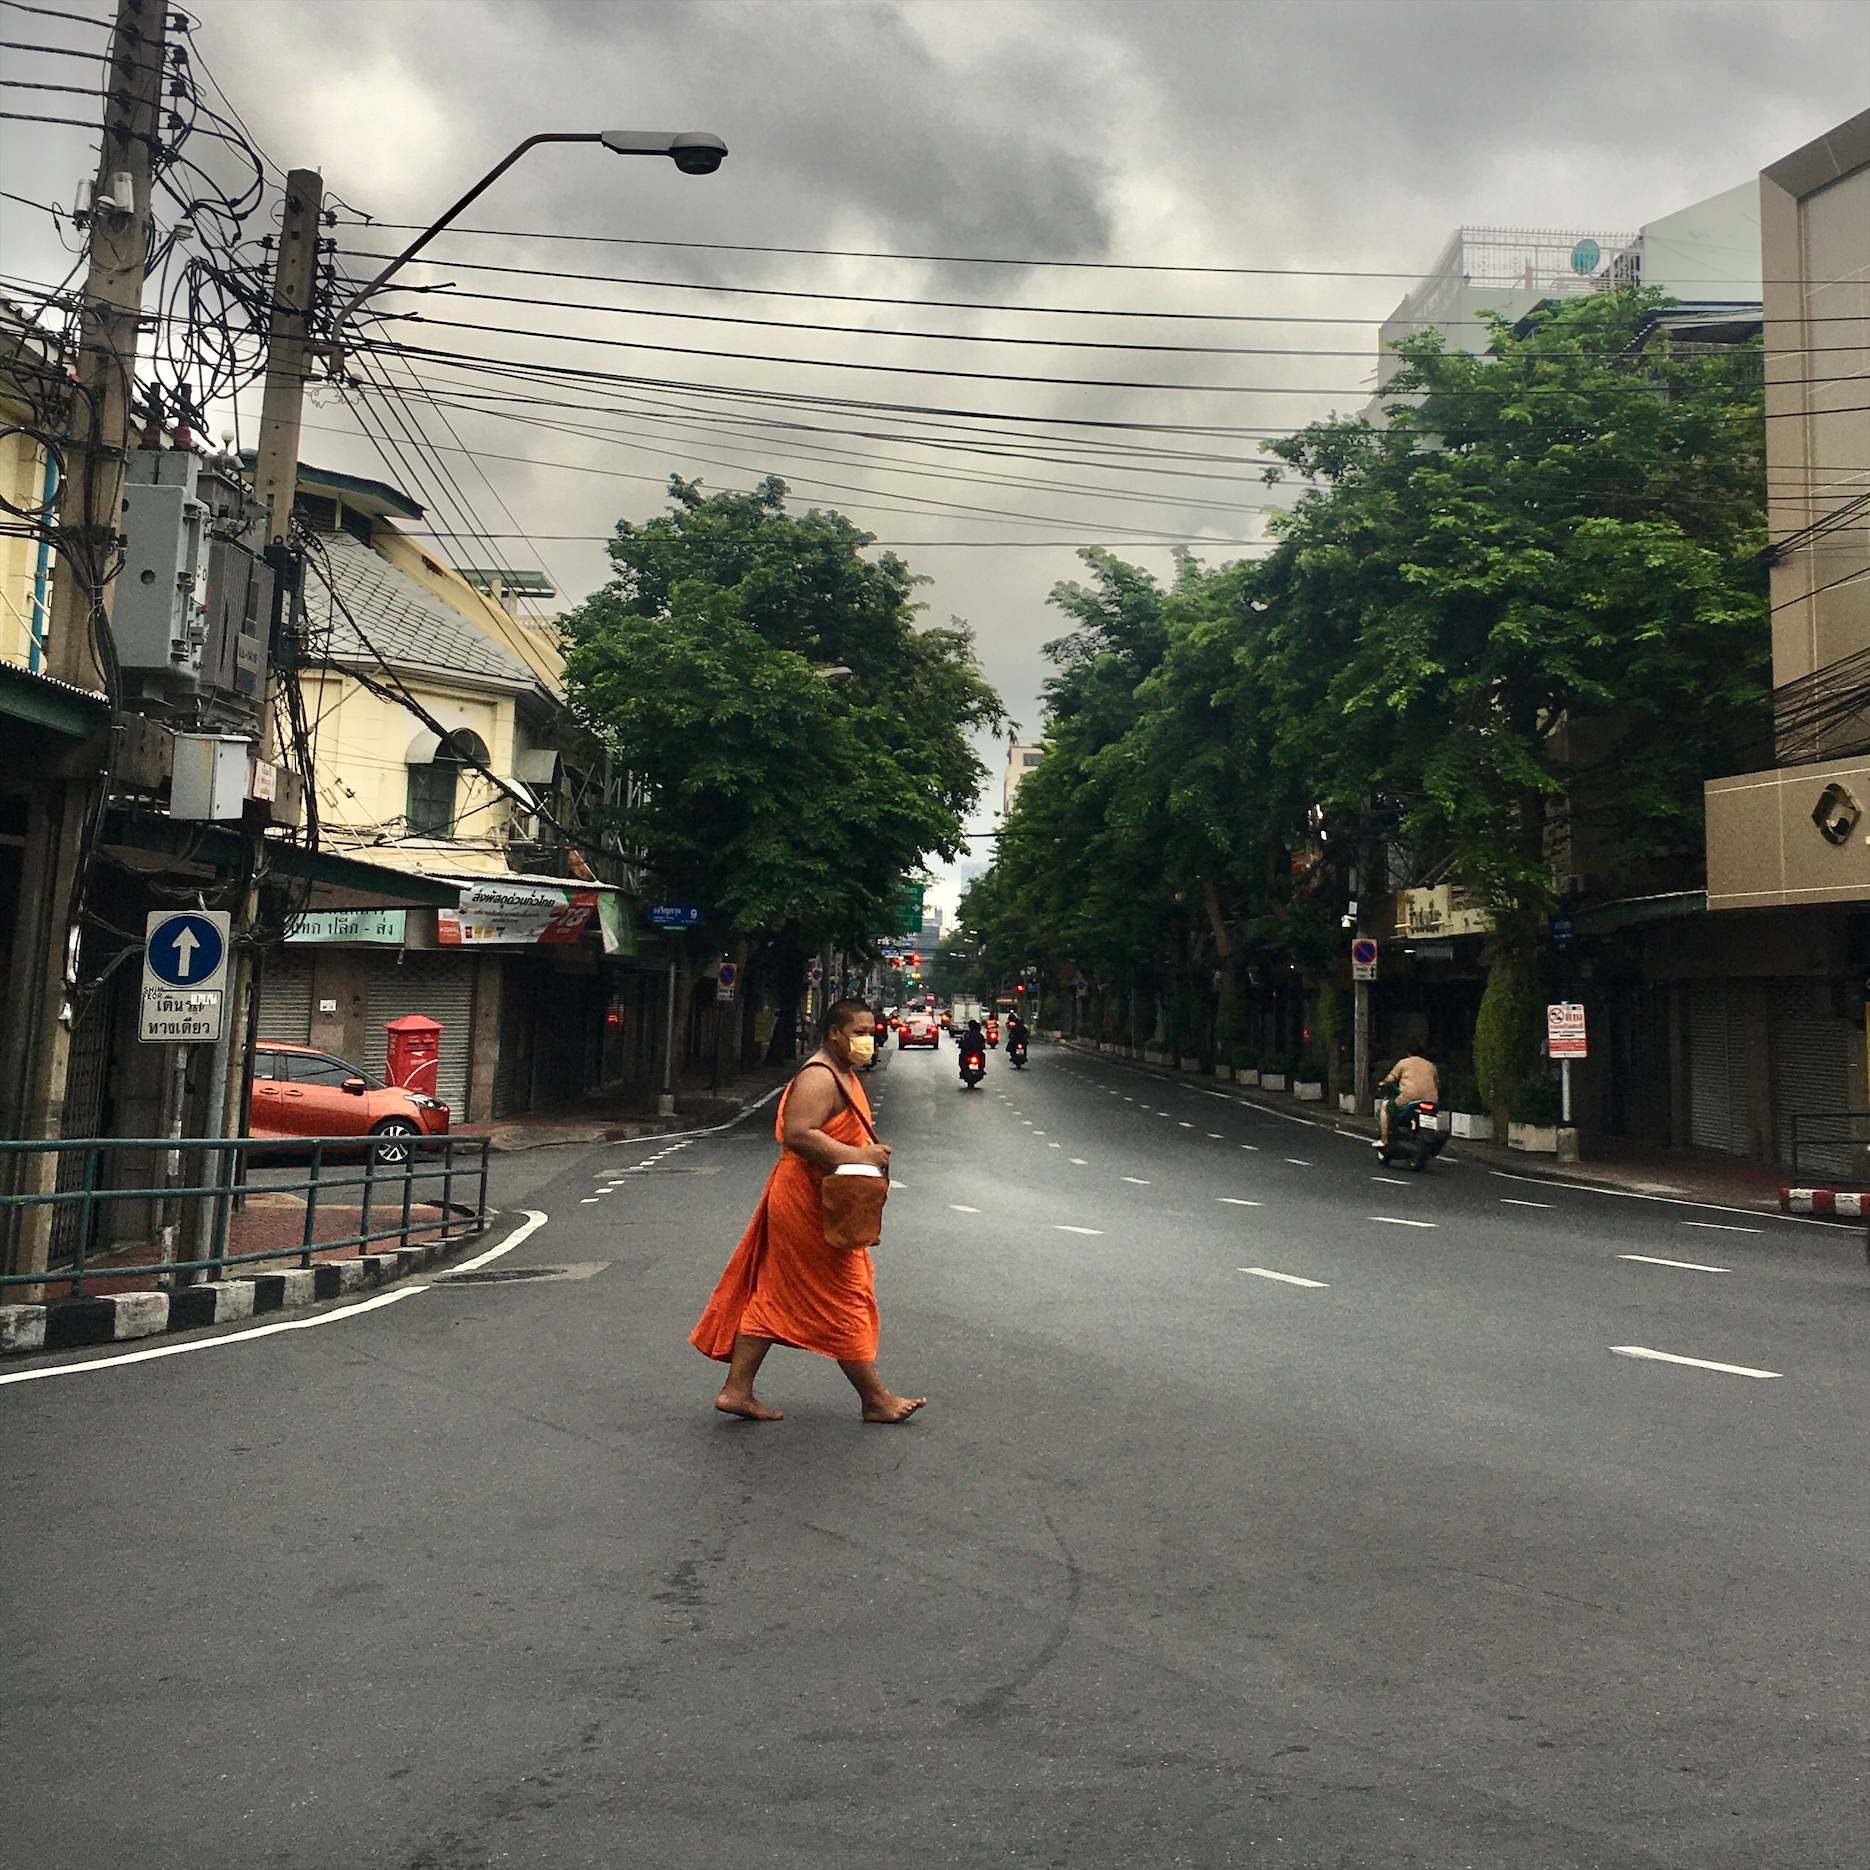 Street of Bangkok